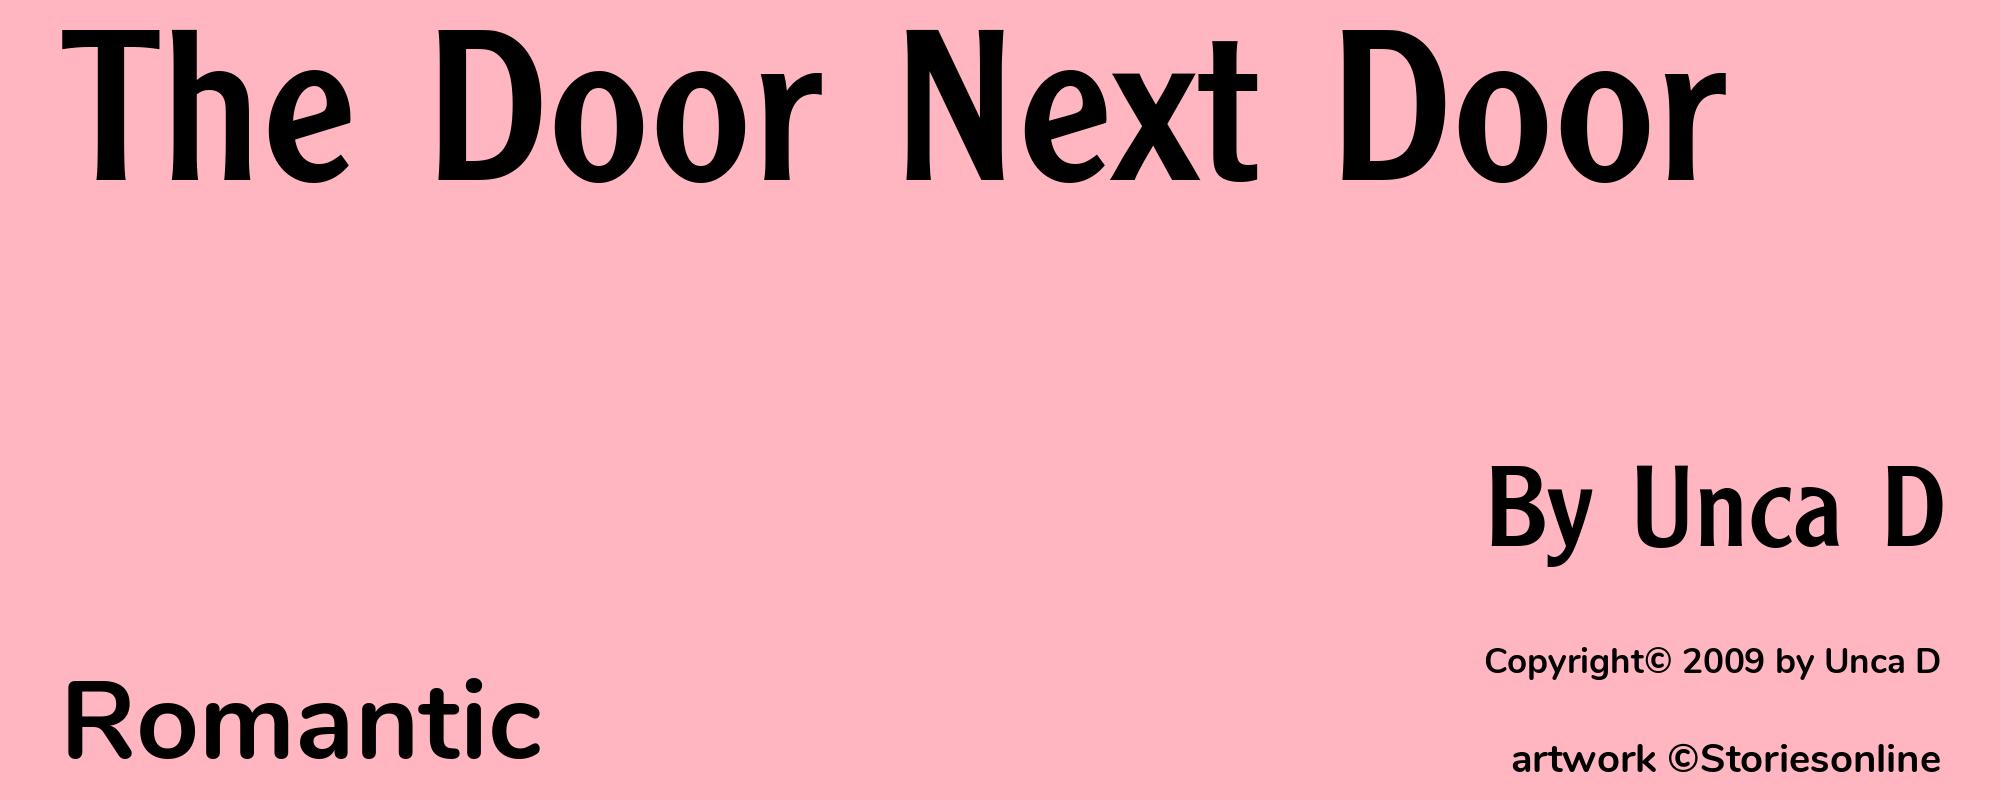 The Door Next Door - Cover